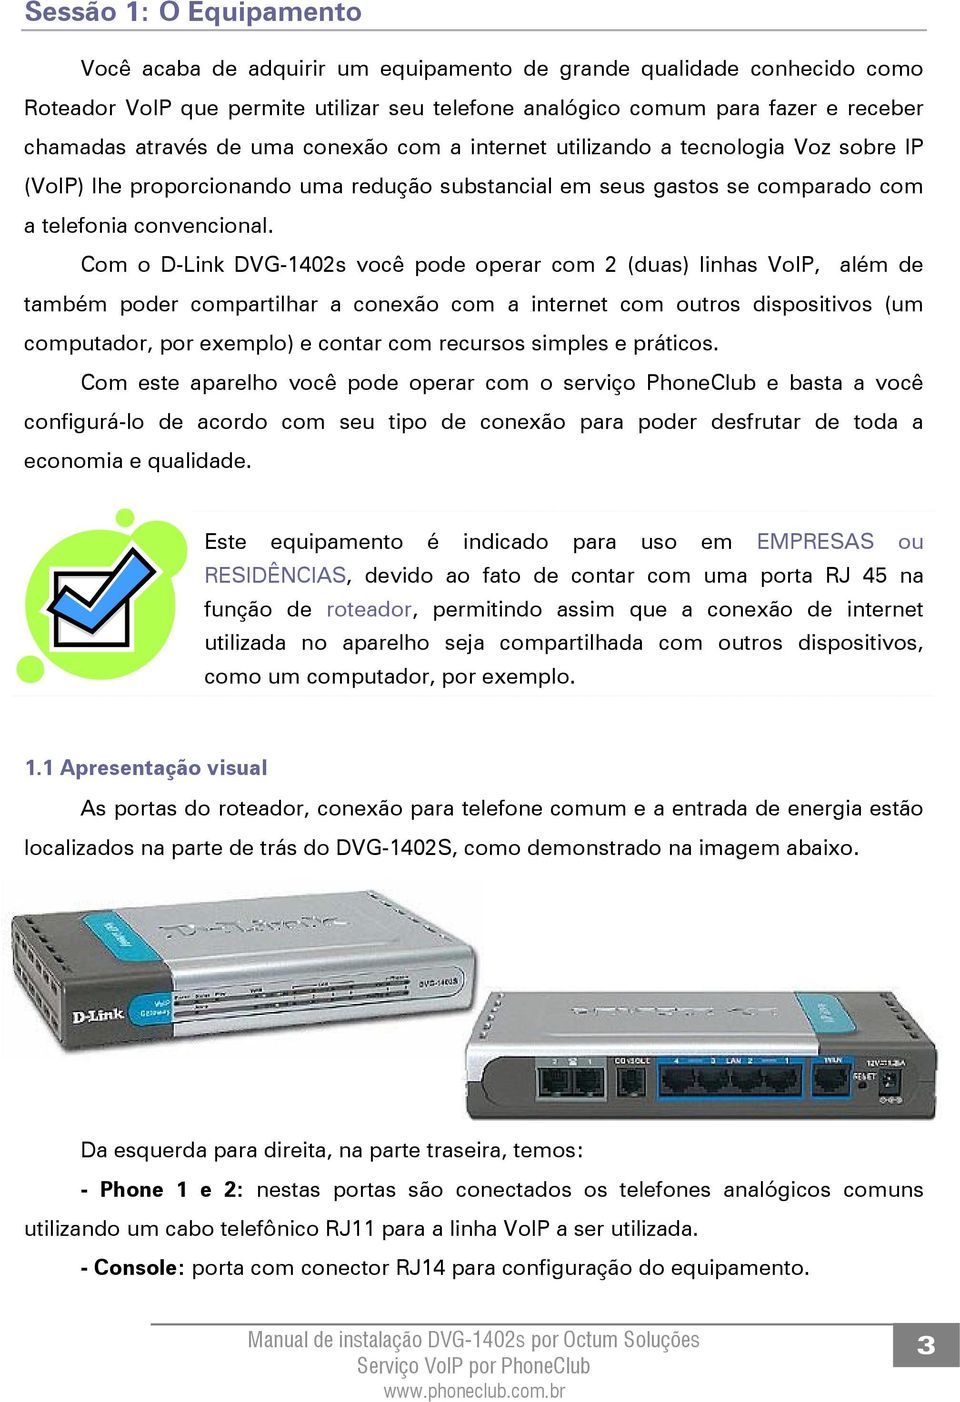 Com o D-Link DVG-1402s você pode operar com 2 (duas) linhas VoIP, além de também poder compartilhar a conexão com a internet com outros dispositivos (um computador, por exemplo) e contar com recursos